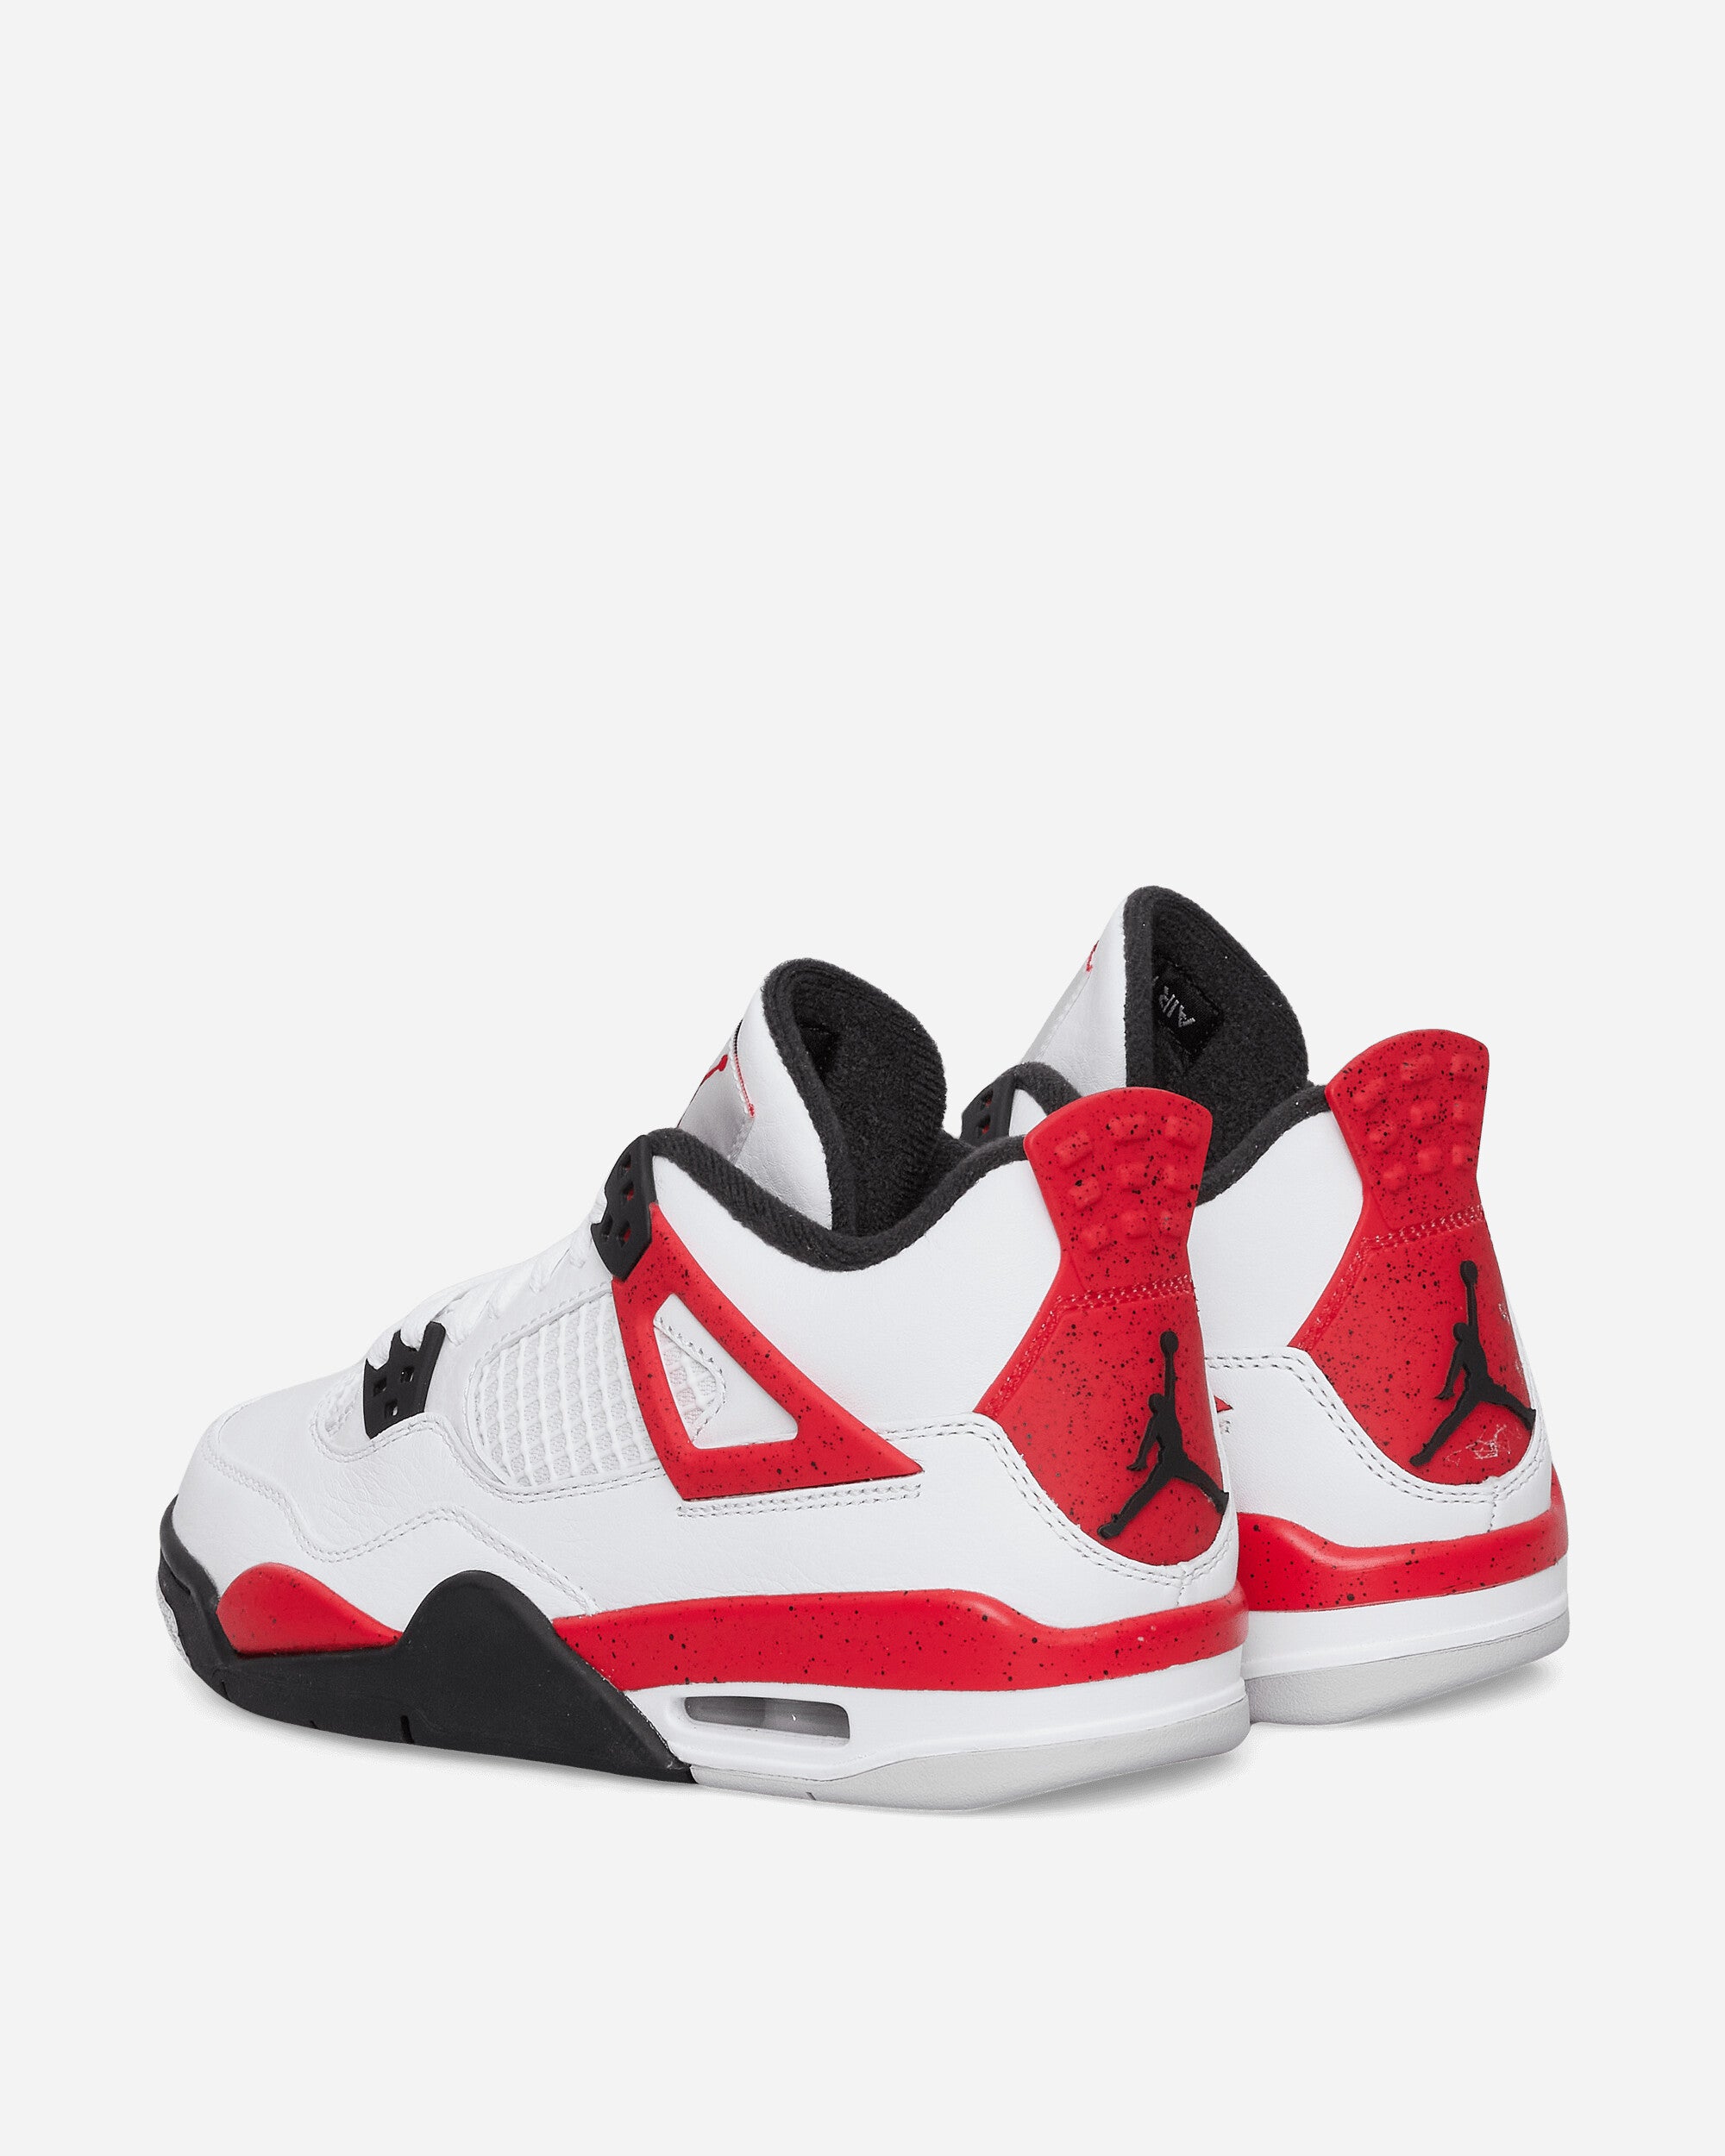 Nike Jordan Air Jordan 4 Retro White/Fire Red/Black Sneakers High 408452-161